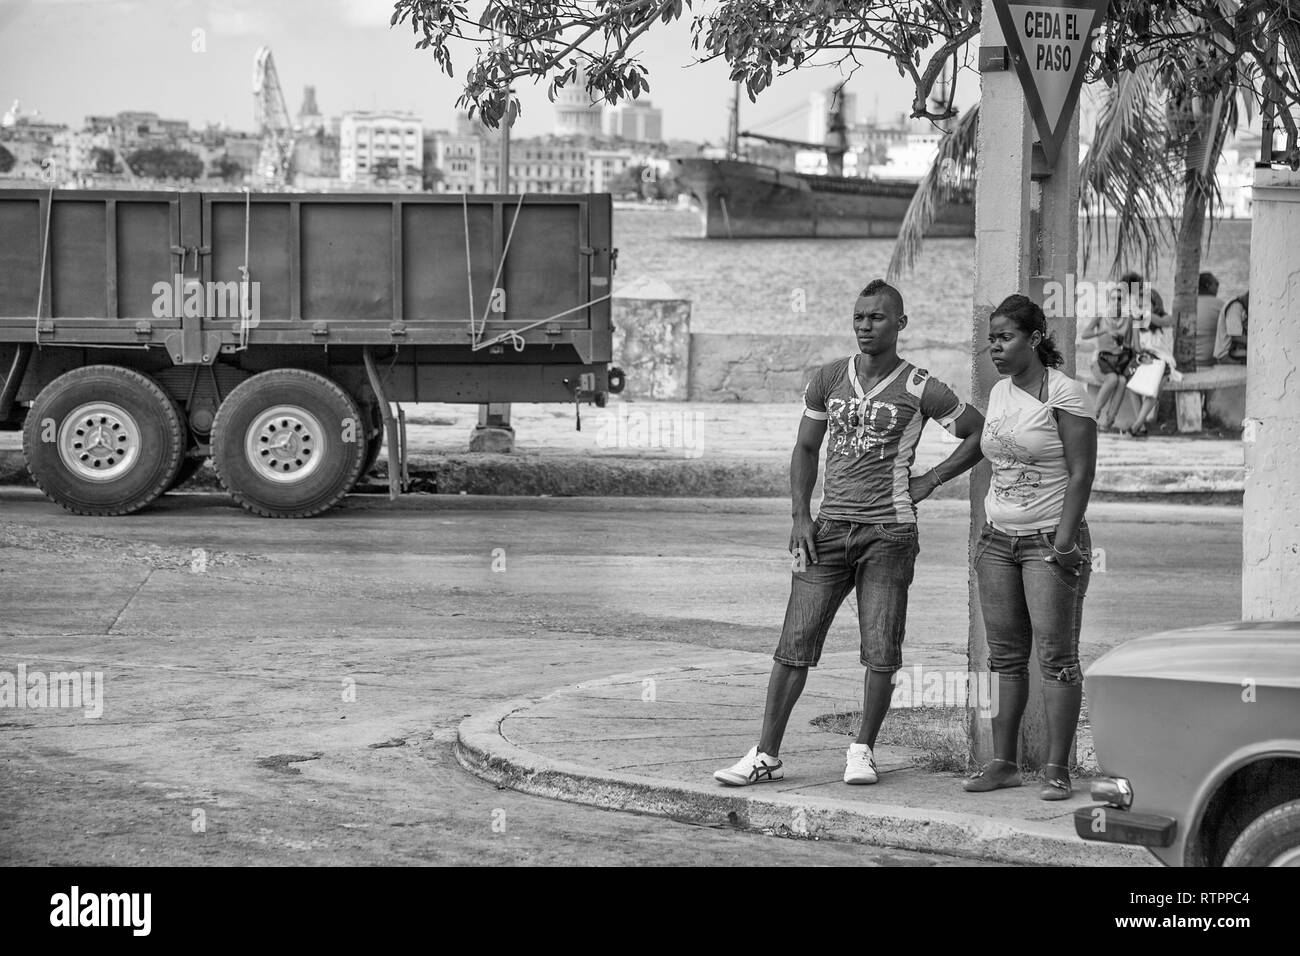 L'Avana, Cuba - 12 Gennaio 2013: una vista delle strade della città con il popolo cubano. Due afro-cubano adolescenti in attesa. Foto Stock